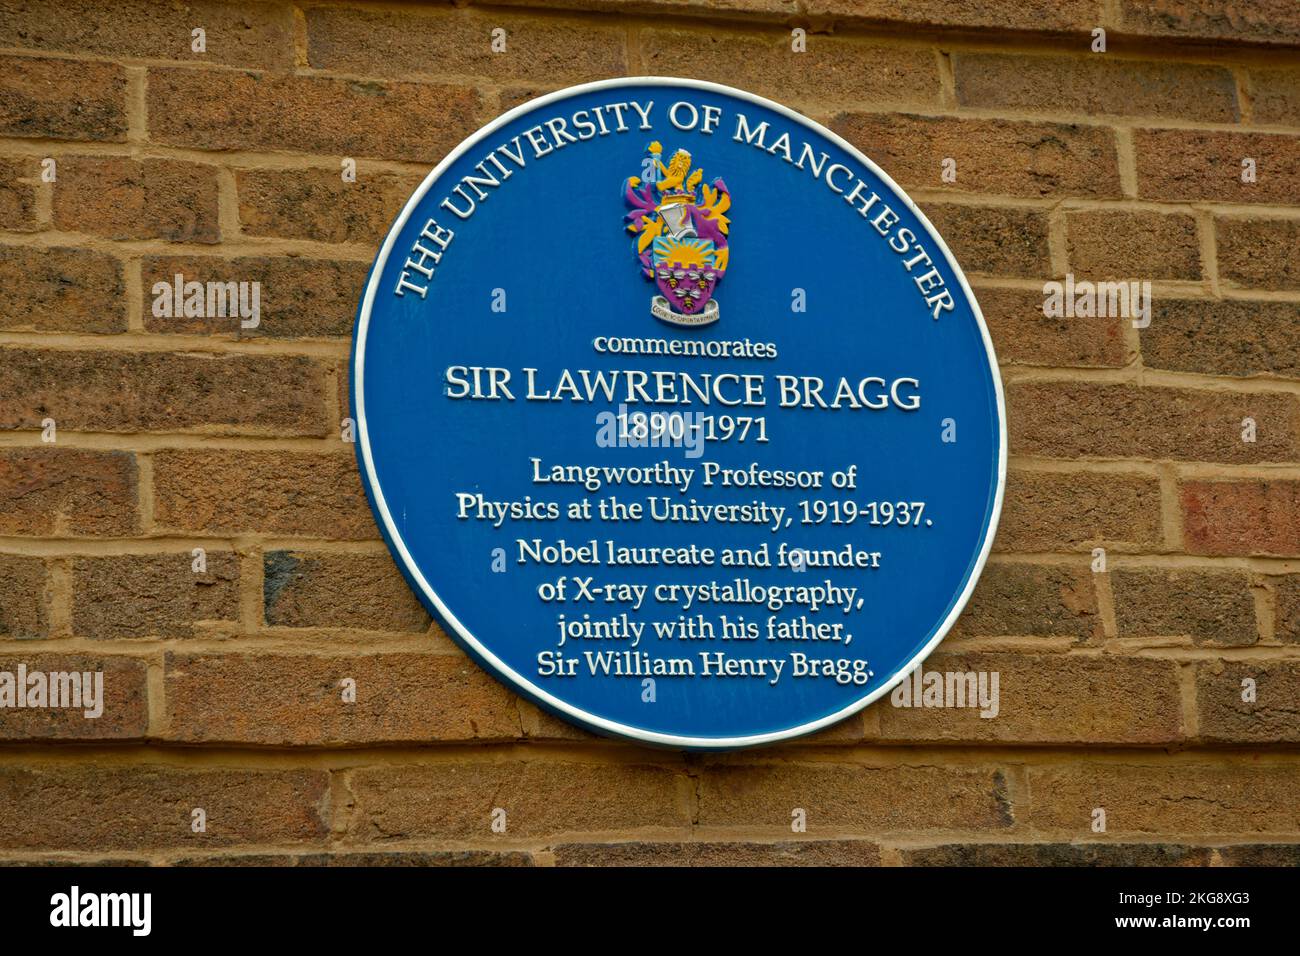 Blue Plate in Coupland Street dell'Università di Manchester per celebrare il lavoro svolto da Lawrence Bragg, fondatore della cristallografia a raggi X. Foto Stock